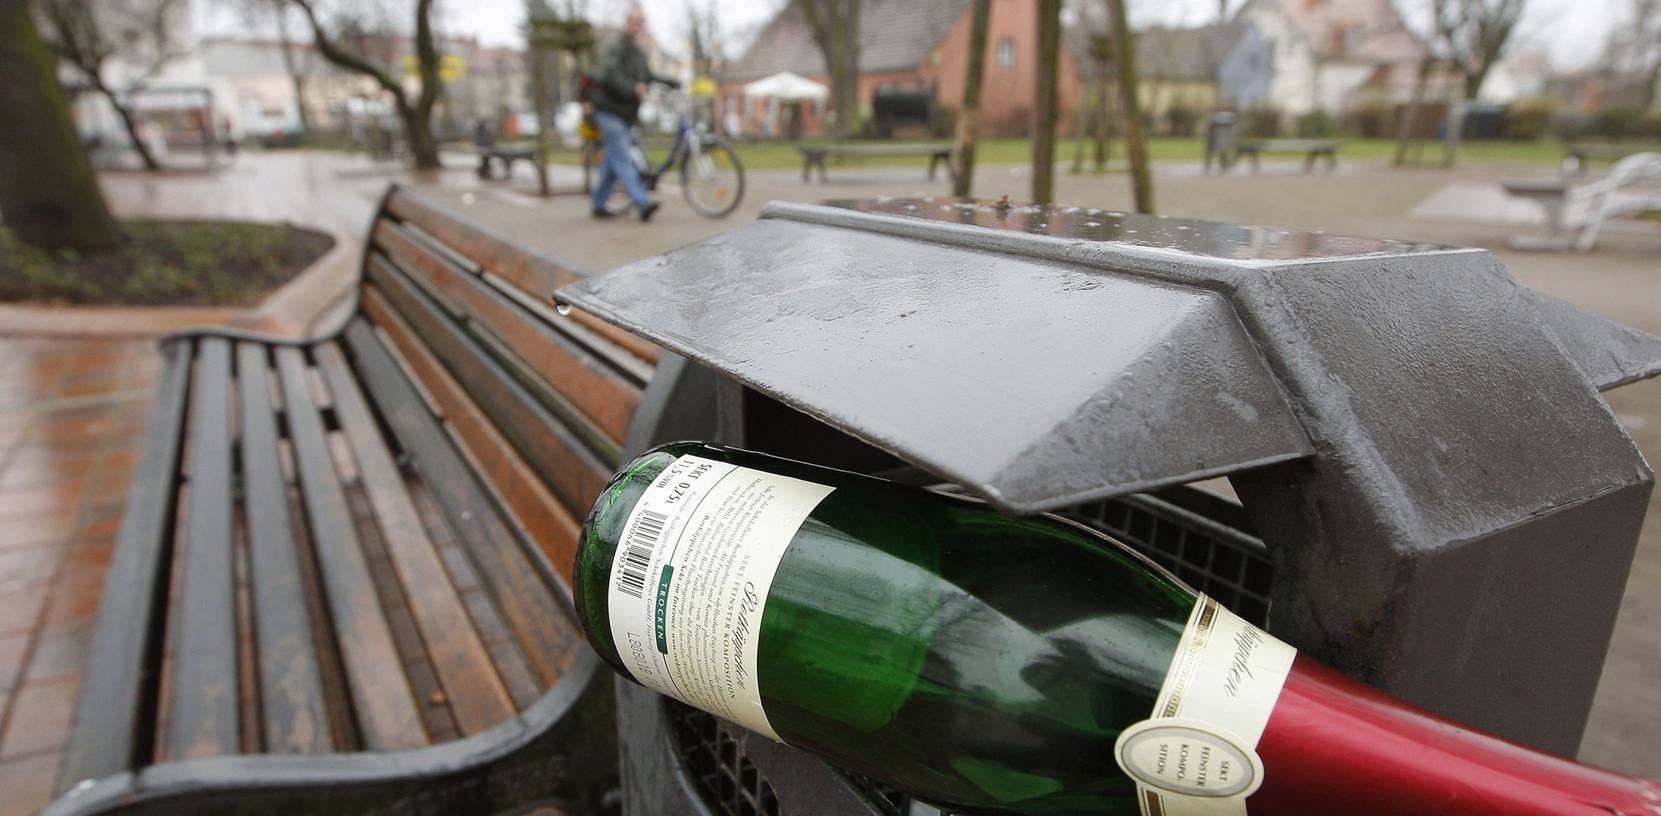 Der aktuelle Stand ist: In Nürnberg wird es kein Alkoholverbot geben.